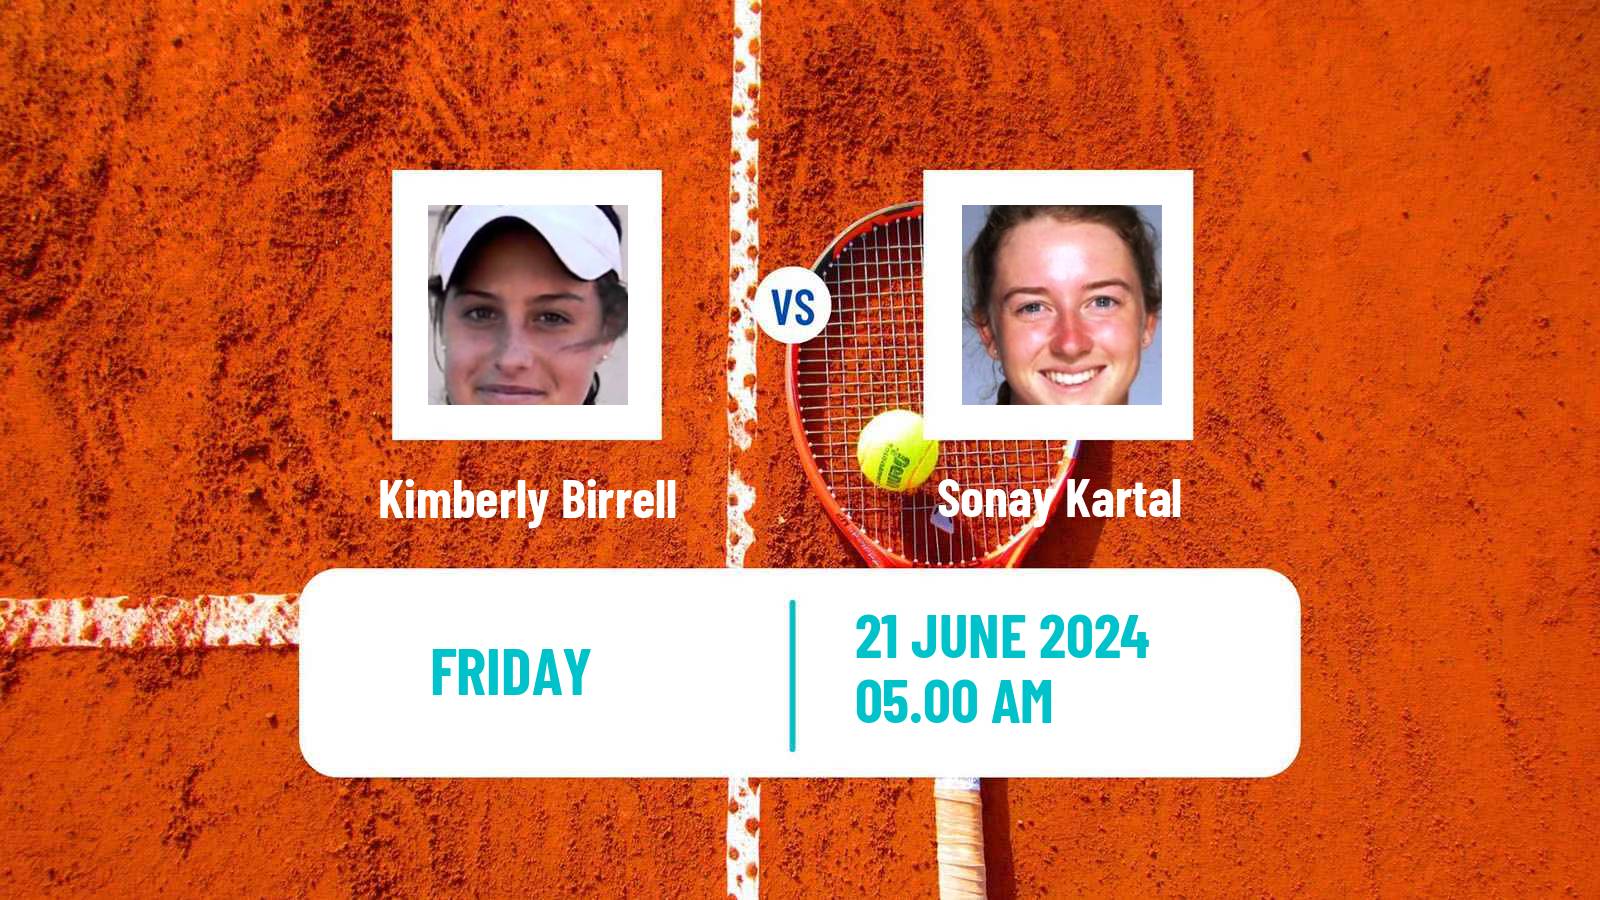 Tennis ITF W100 Ilkley Women Kimberly Birrell - Sonay Kartal